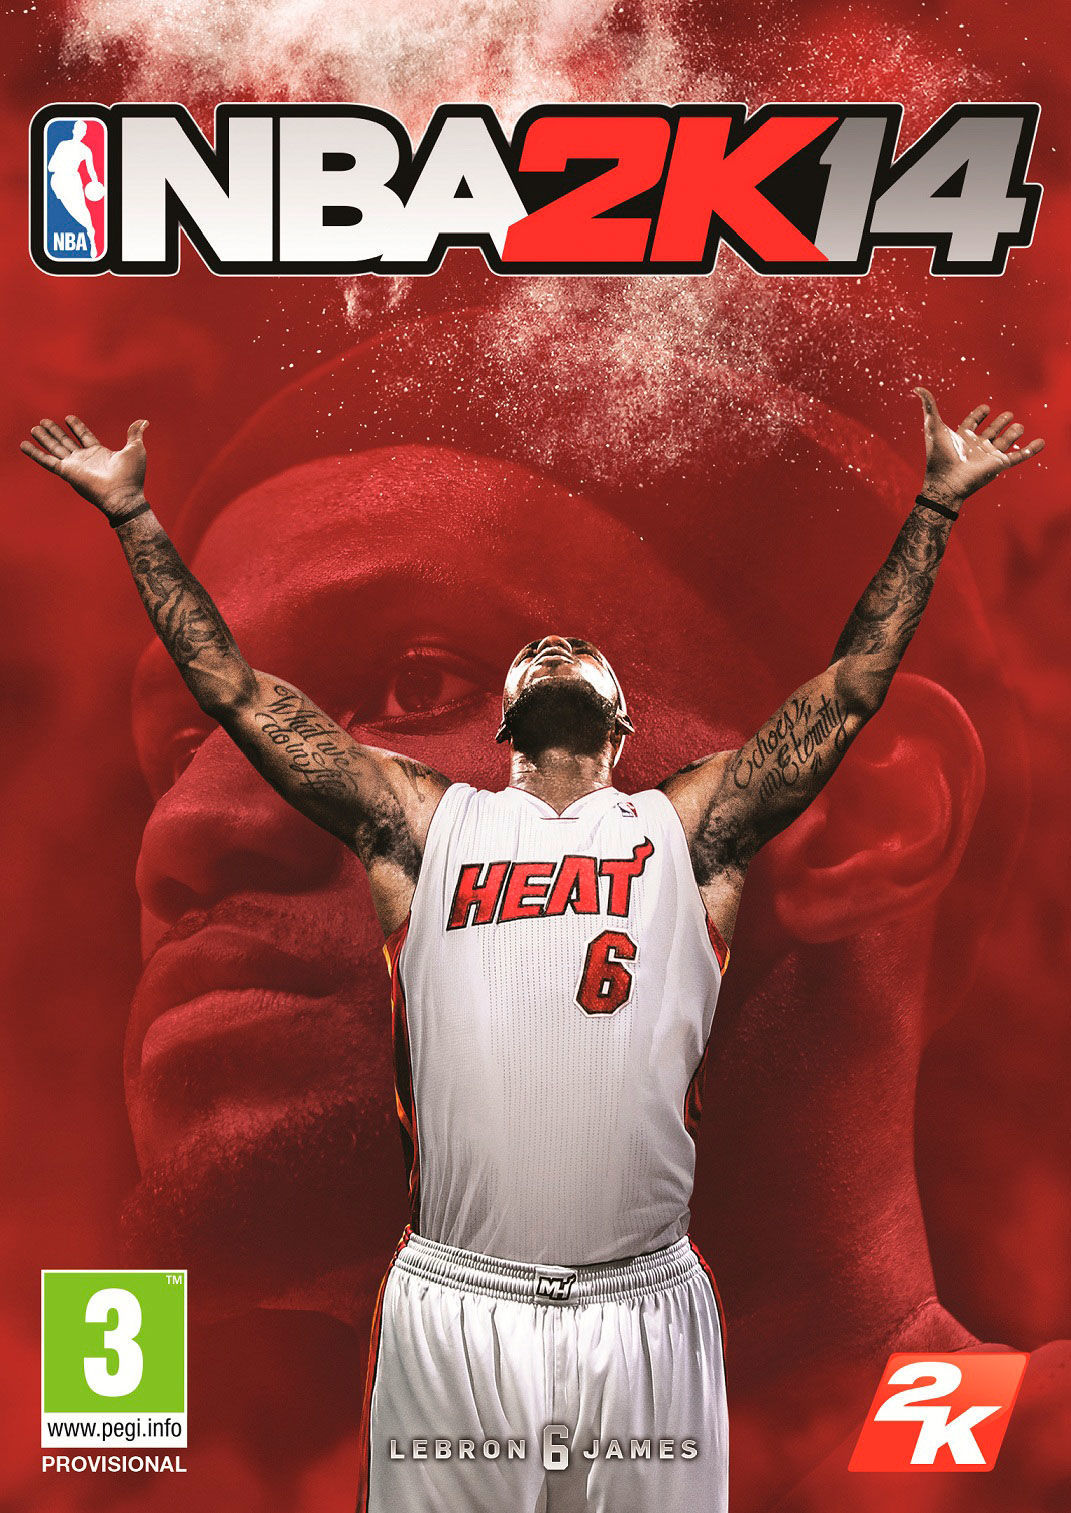 2K Sports anuncia NBA 2K14, con LeBron James como atleta de portada